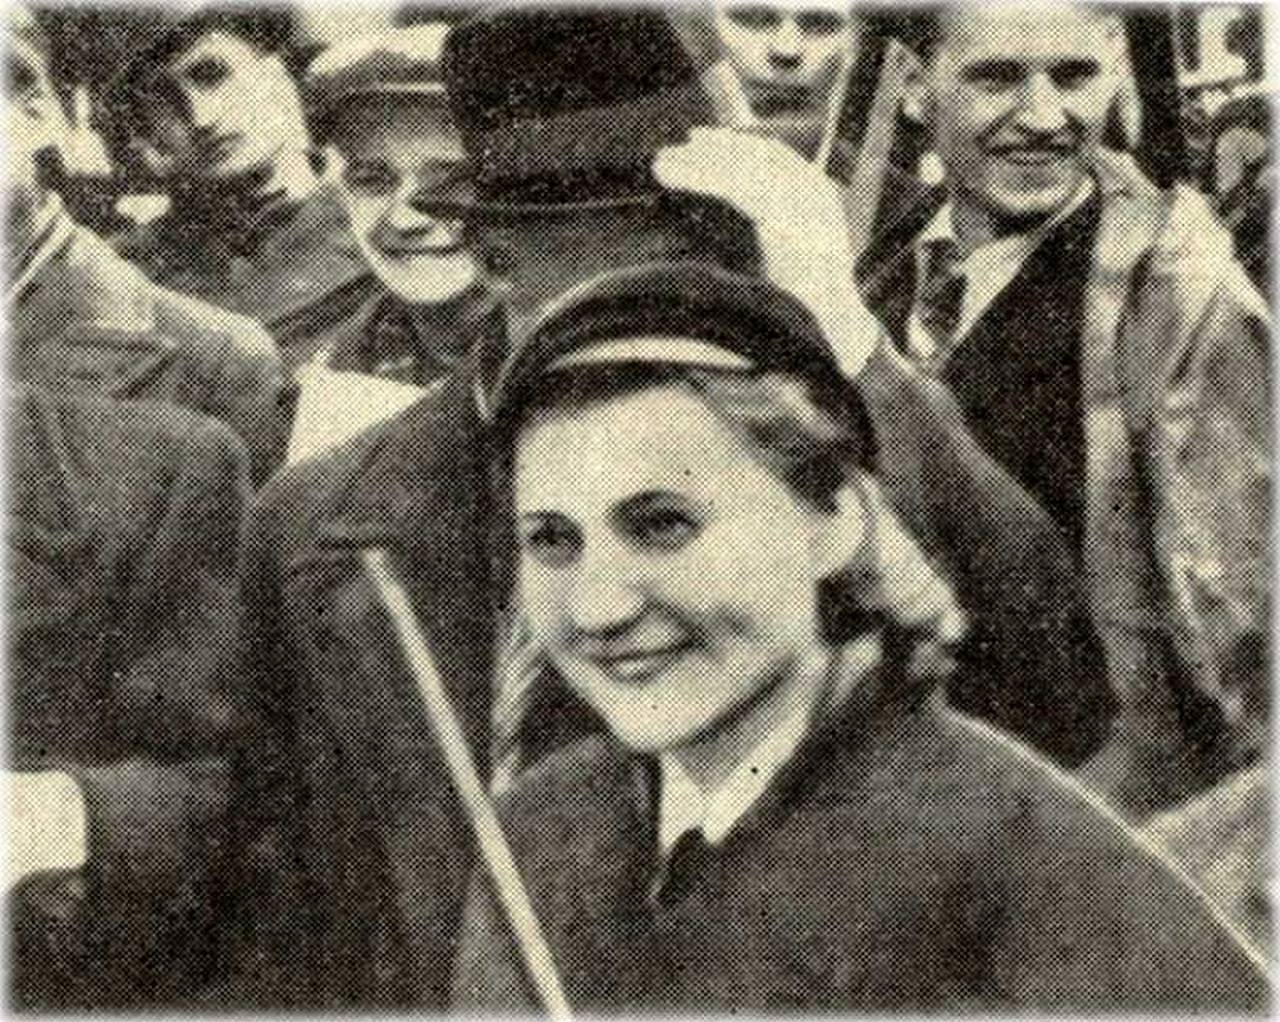 Леэн Кульман на первомайской демонстрации, 1941 г.